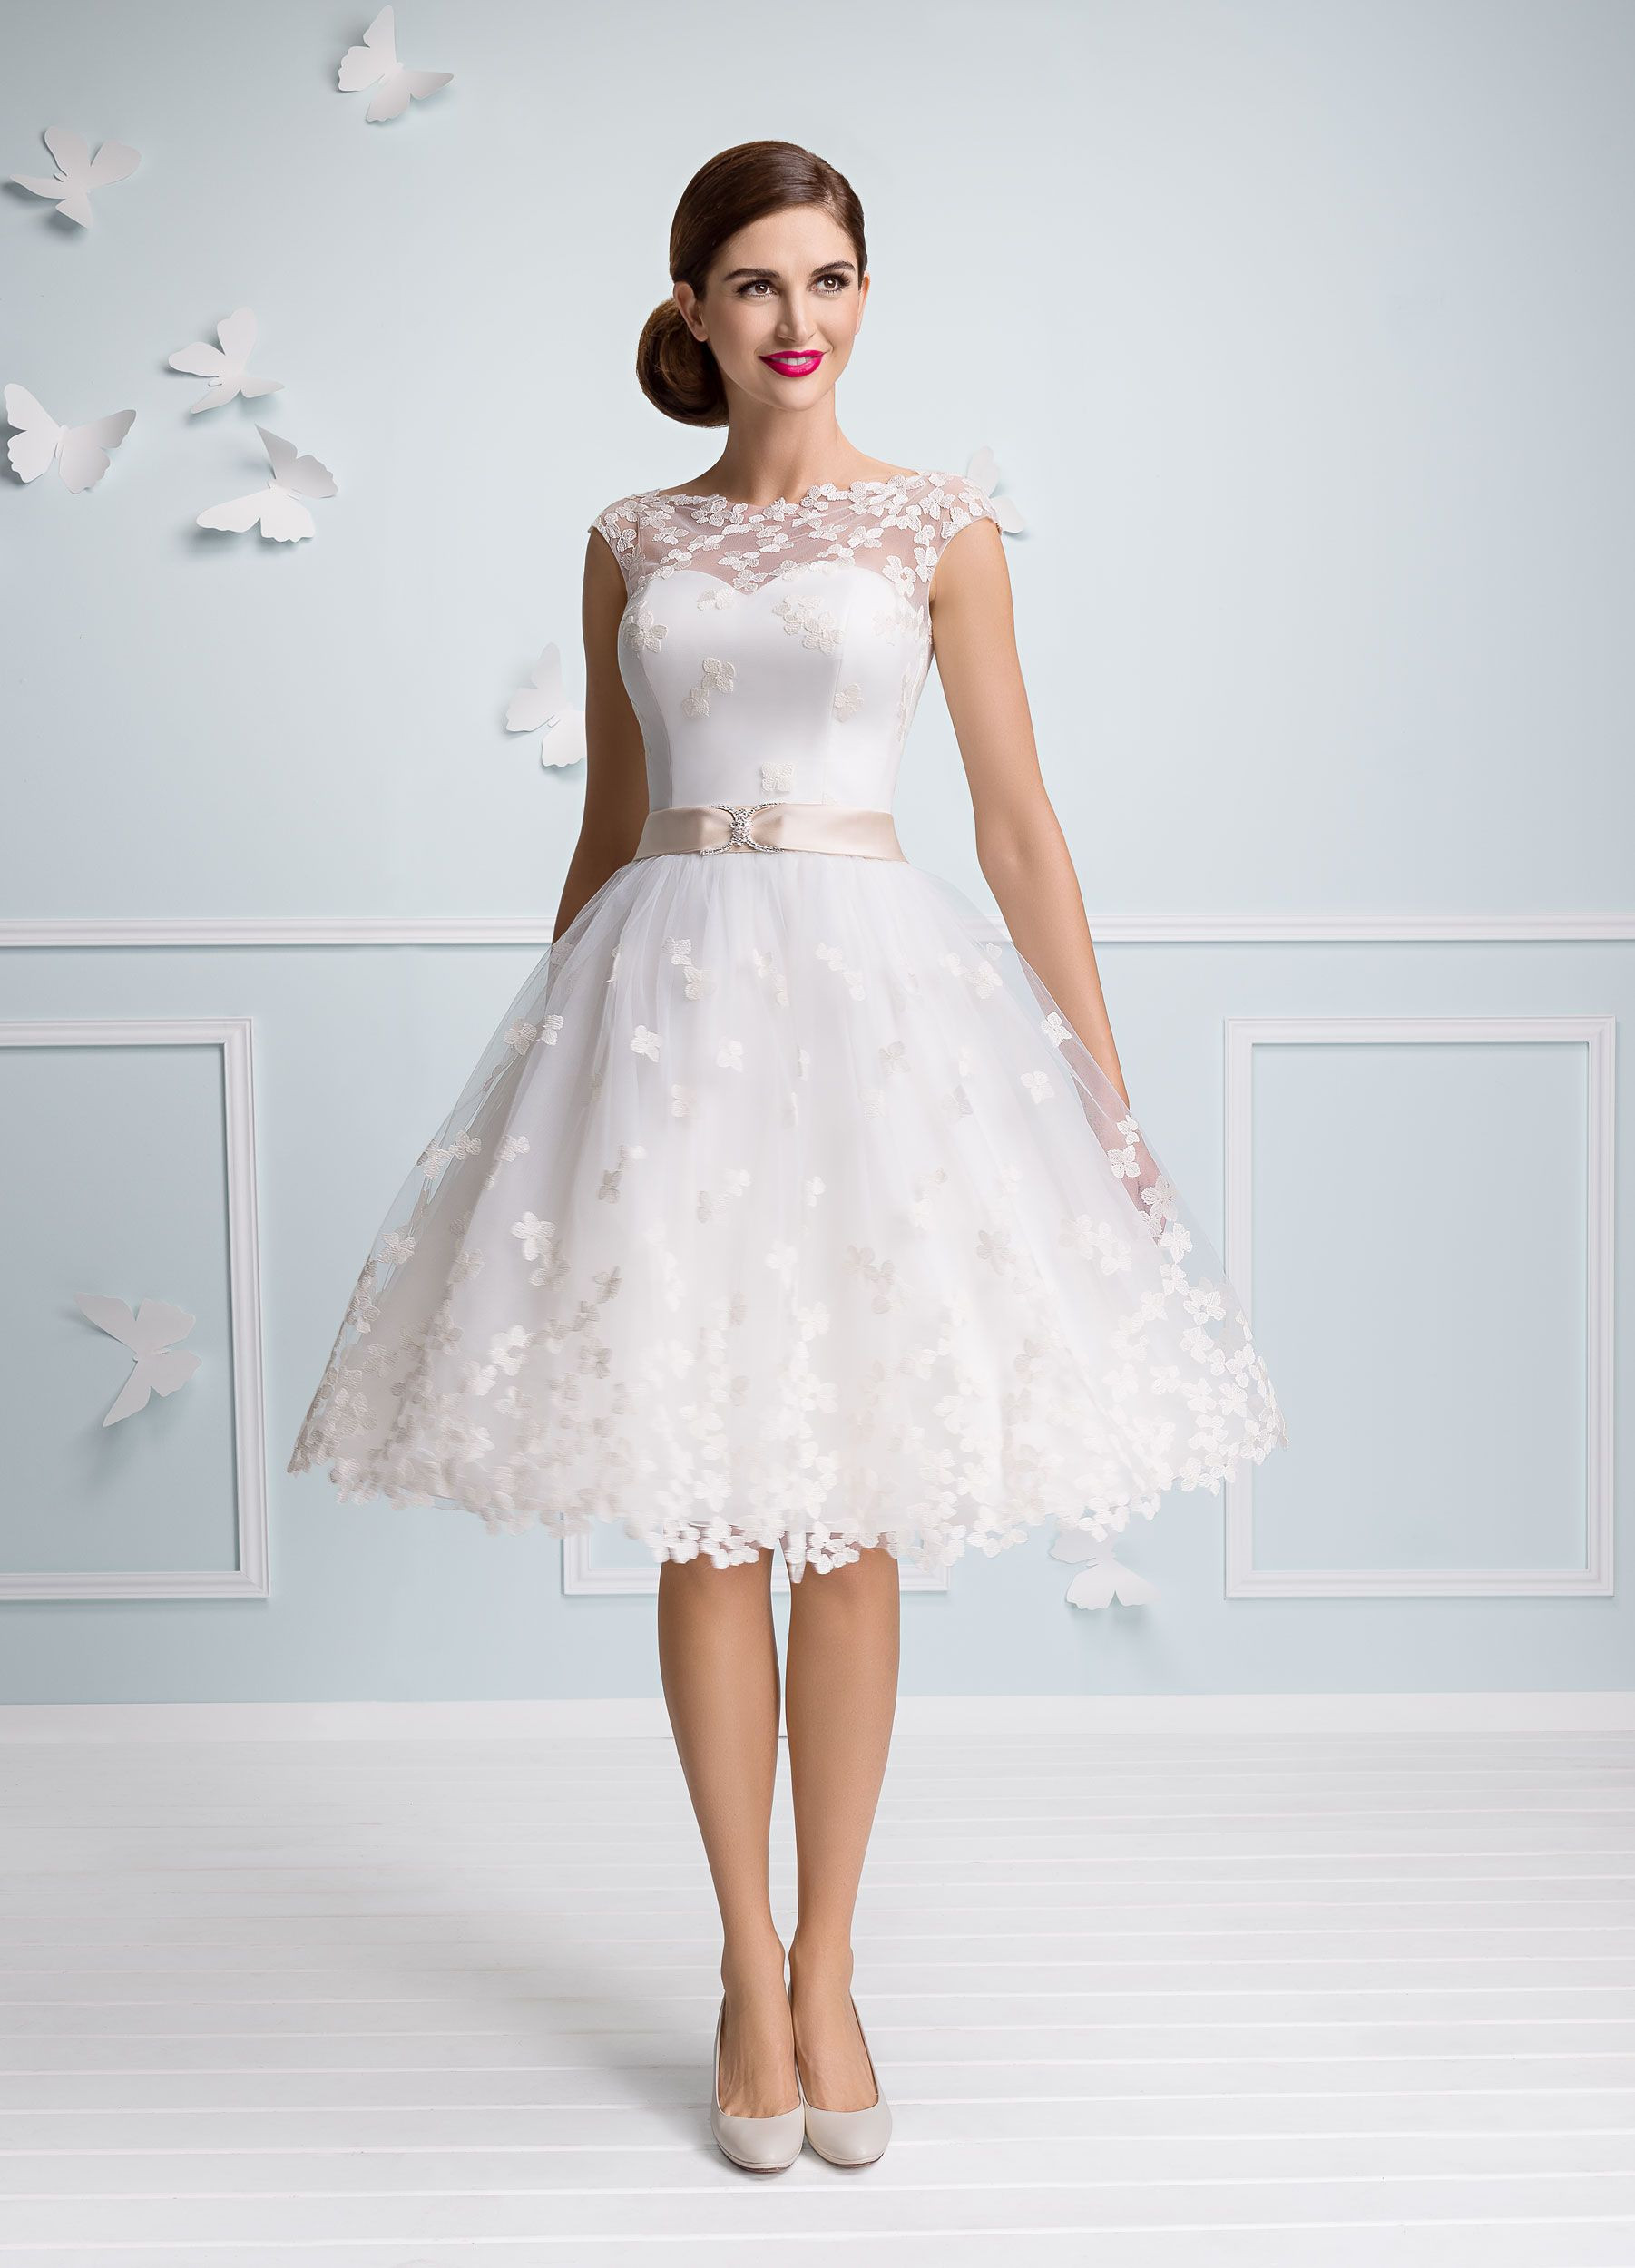 Brautkleid Für Standesamt
 Die besten 25 Hochzeitskleider standesamt Ideen auf